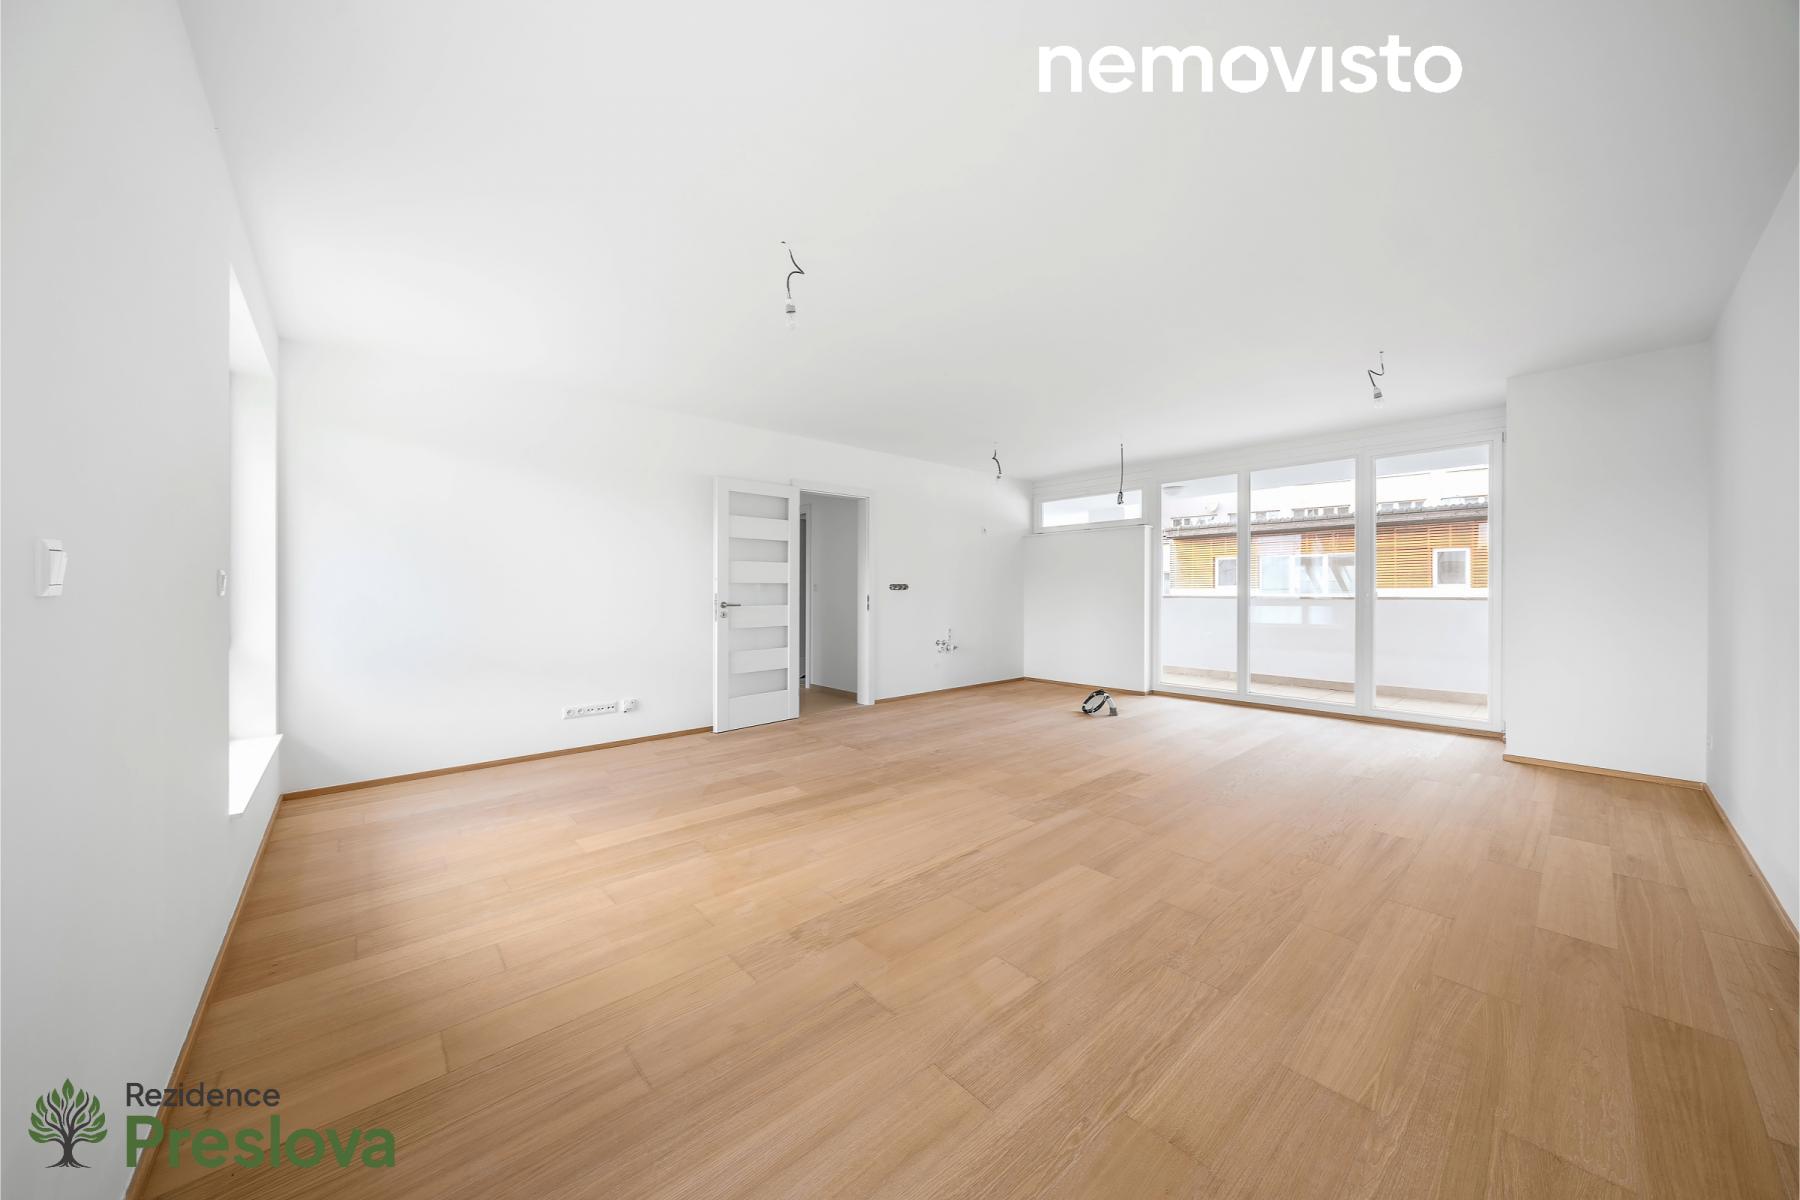 Prodej, novostavba bytu 4+kk s terasou, ul. Preslova, Ostrava - centrum, 120 m2, obrázek č. 1